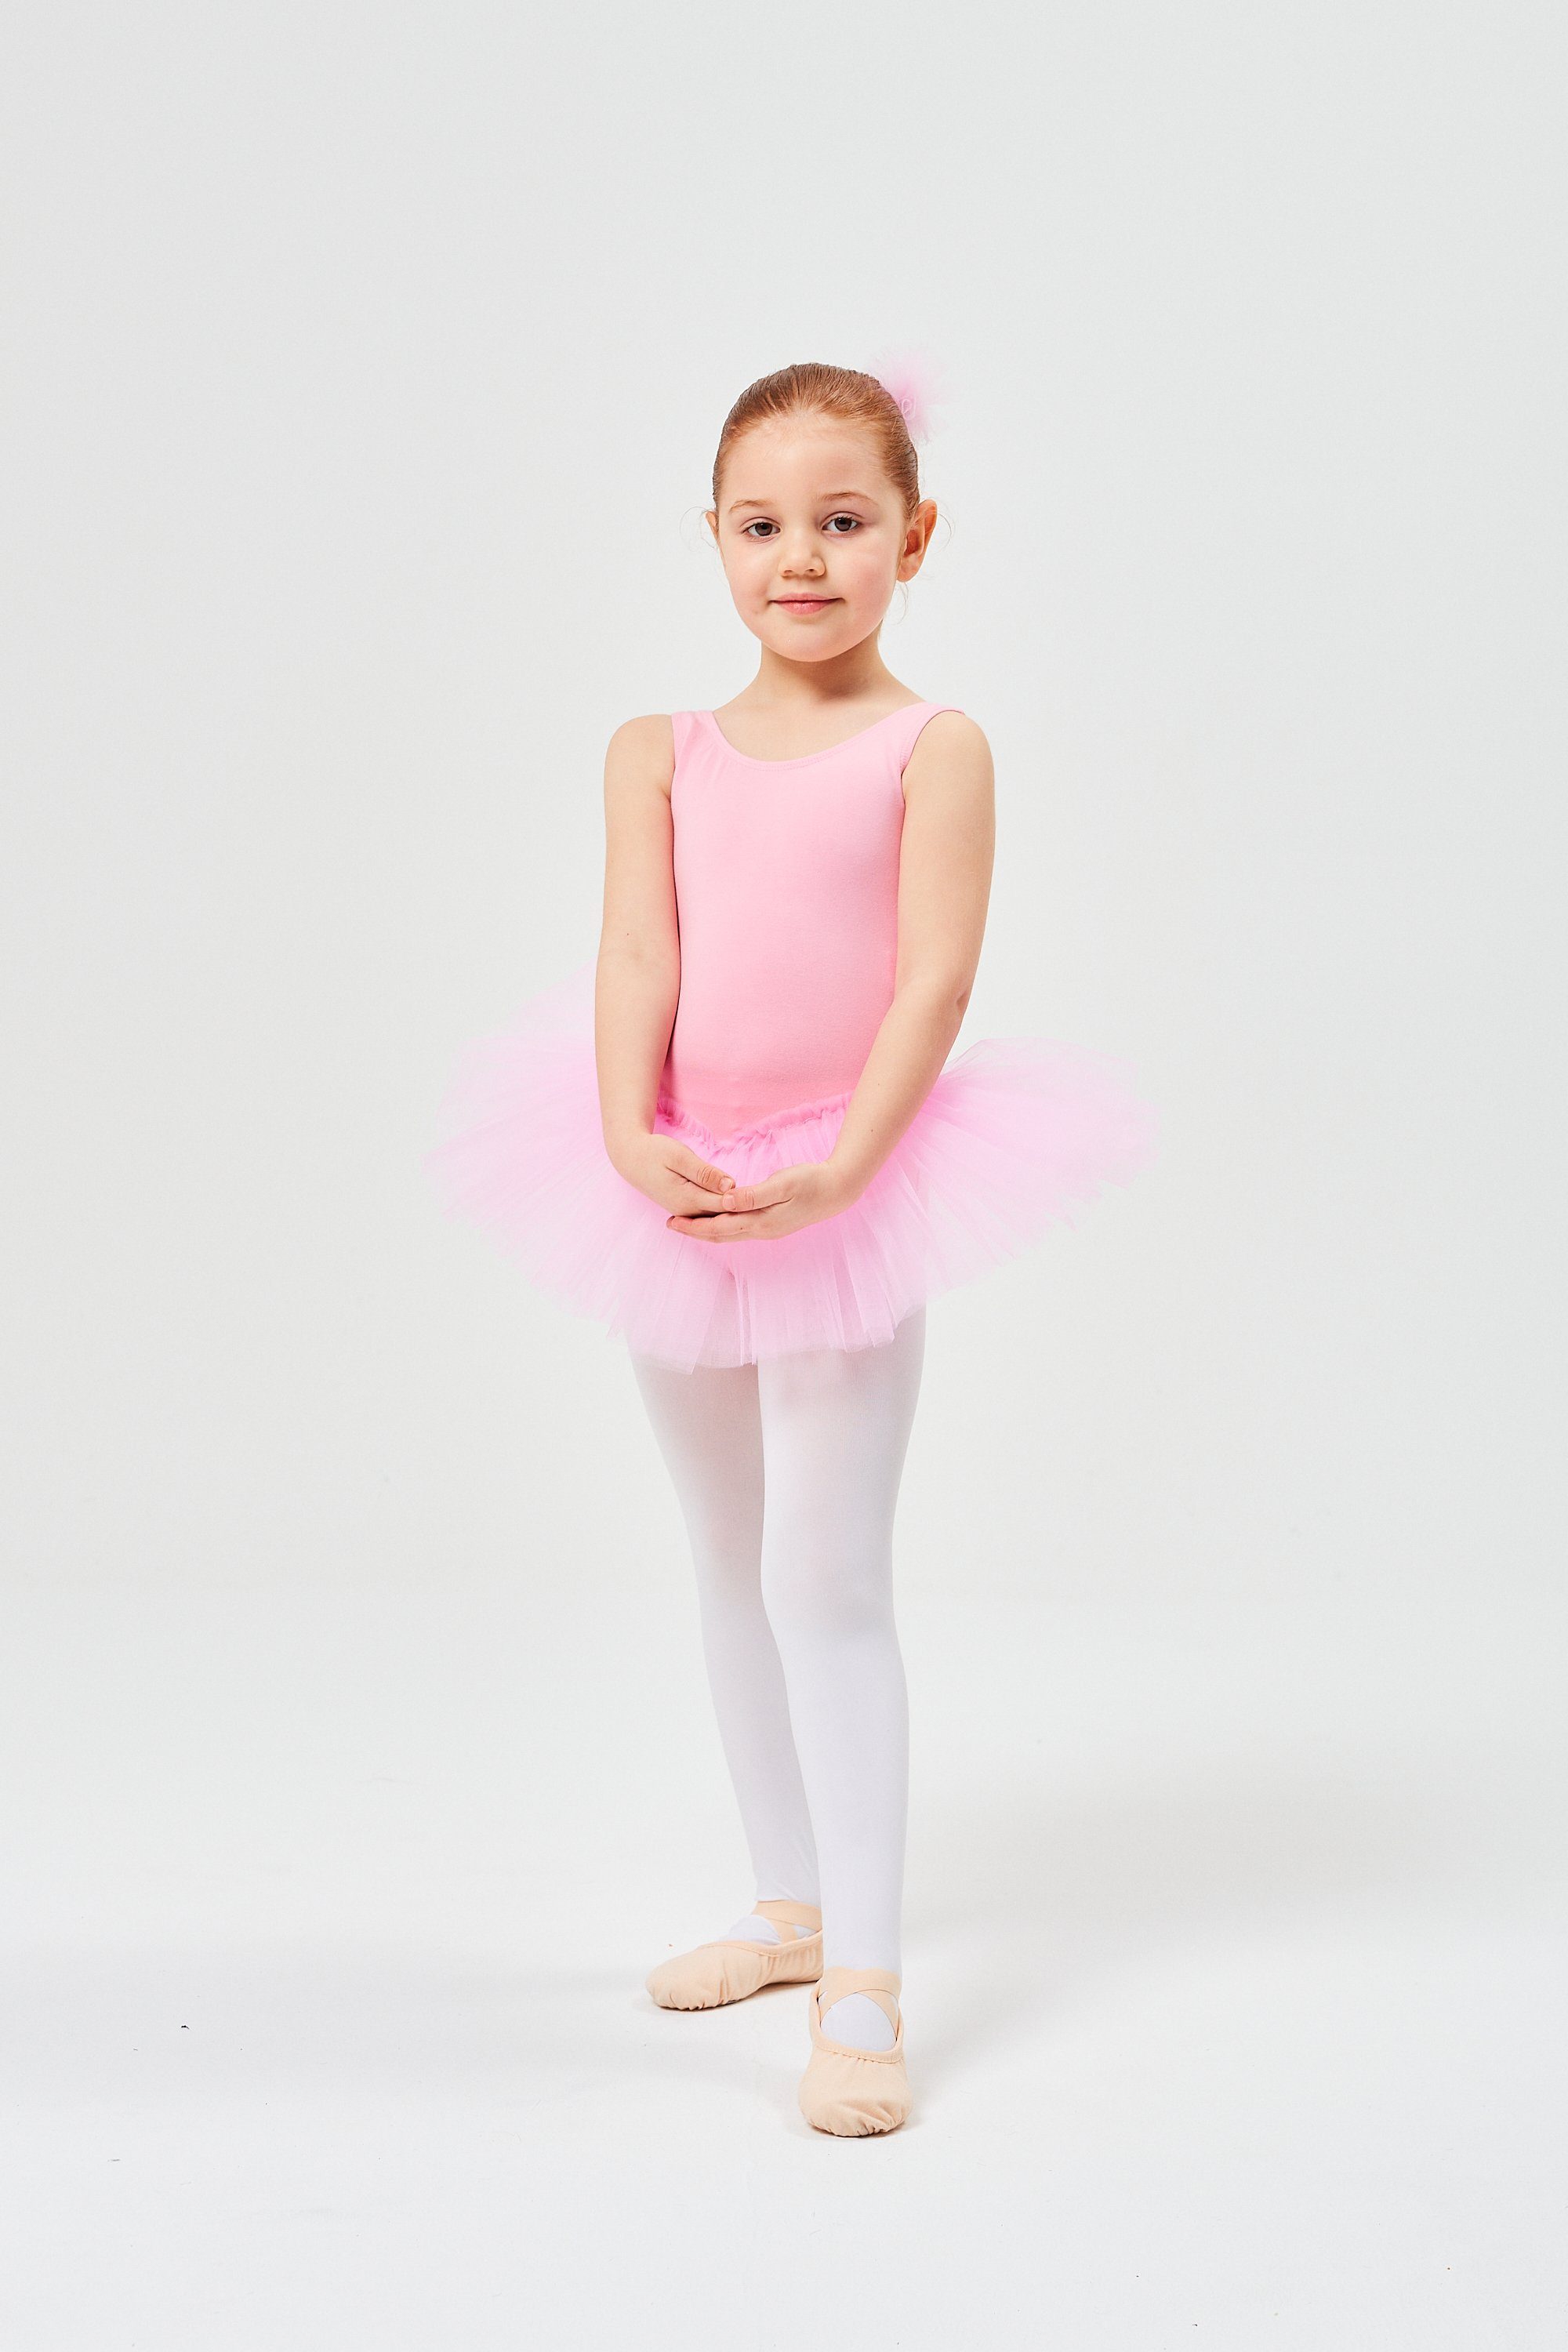 tanzmuster Tüllkleid Ballett aus Baumwolle, ärmellos Anabelle Tutu weicher Mädchen Ballettkleid rosa für